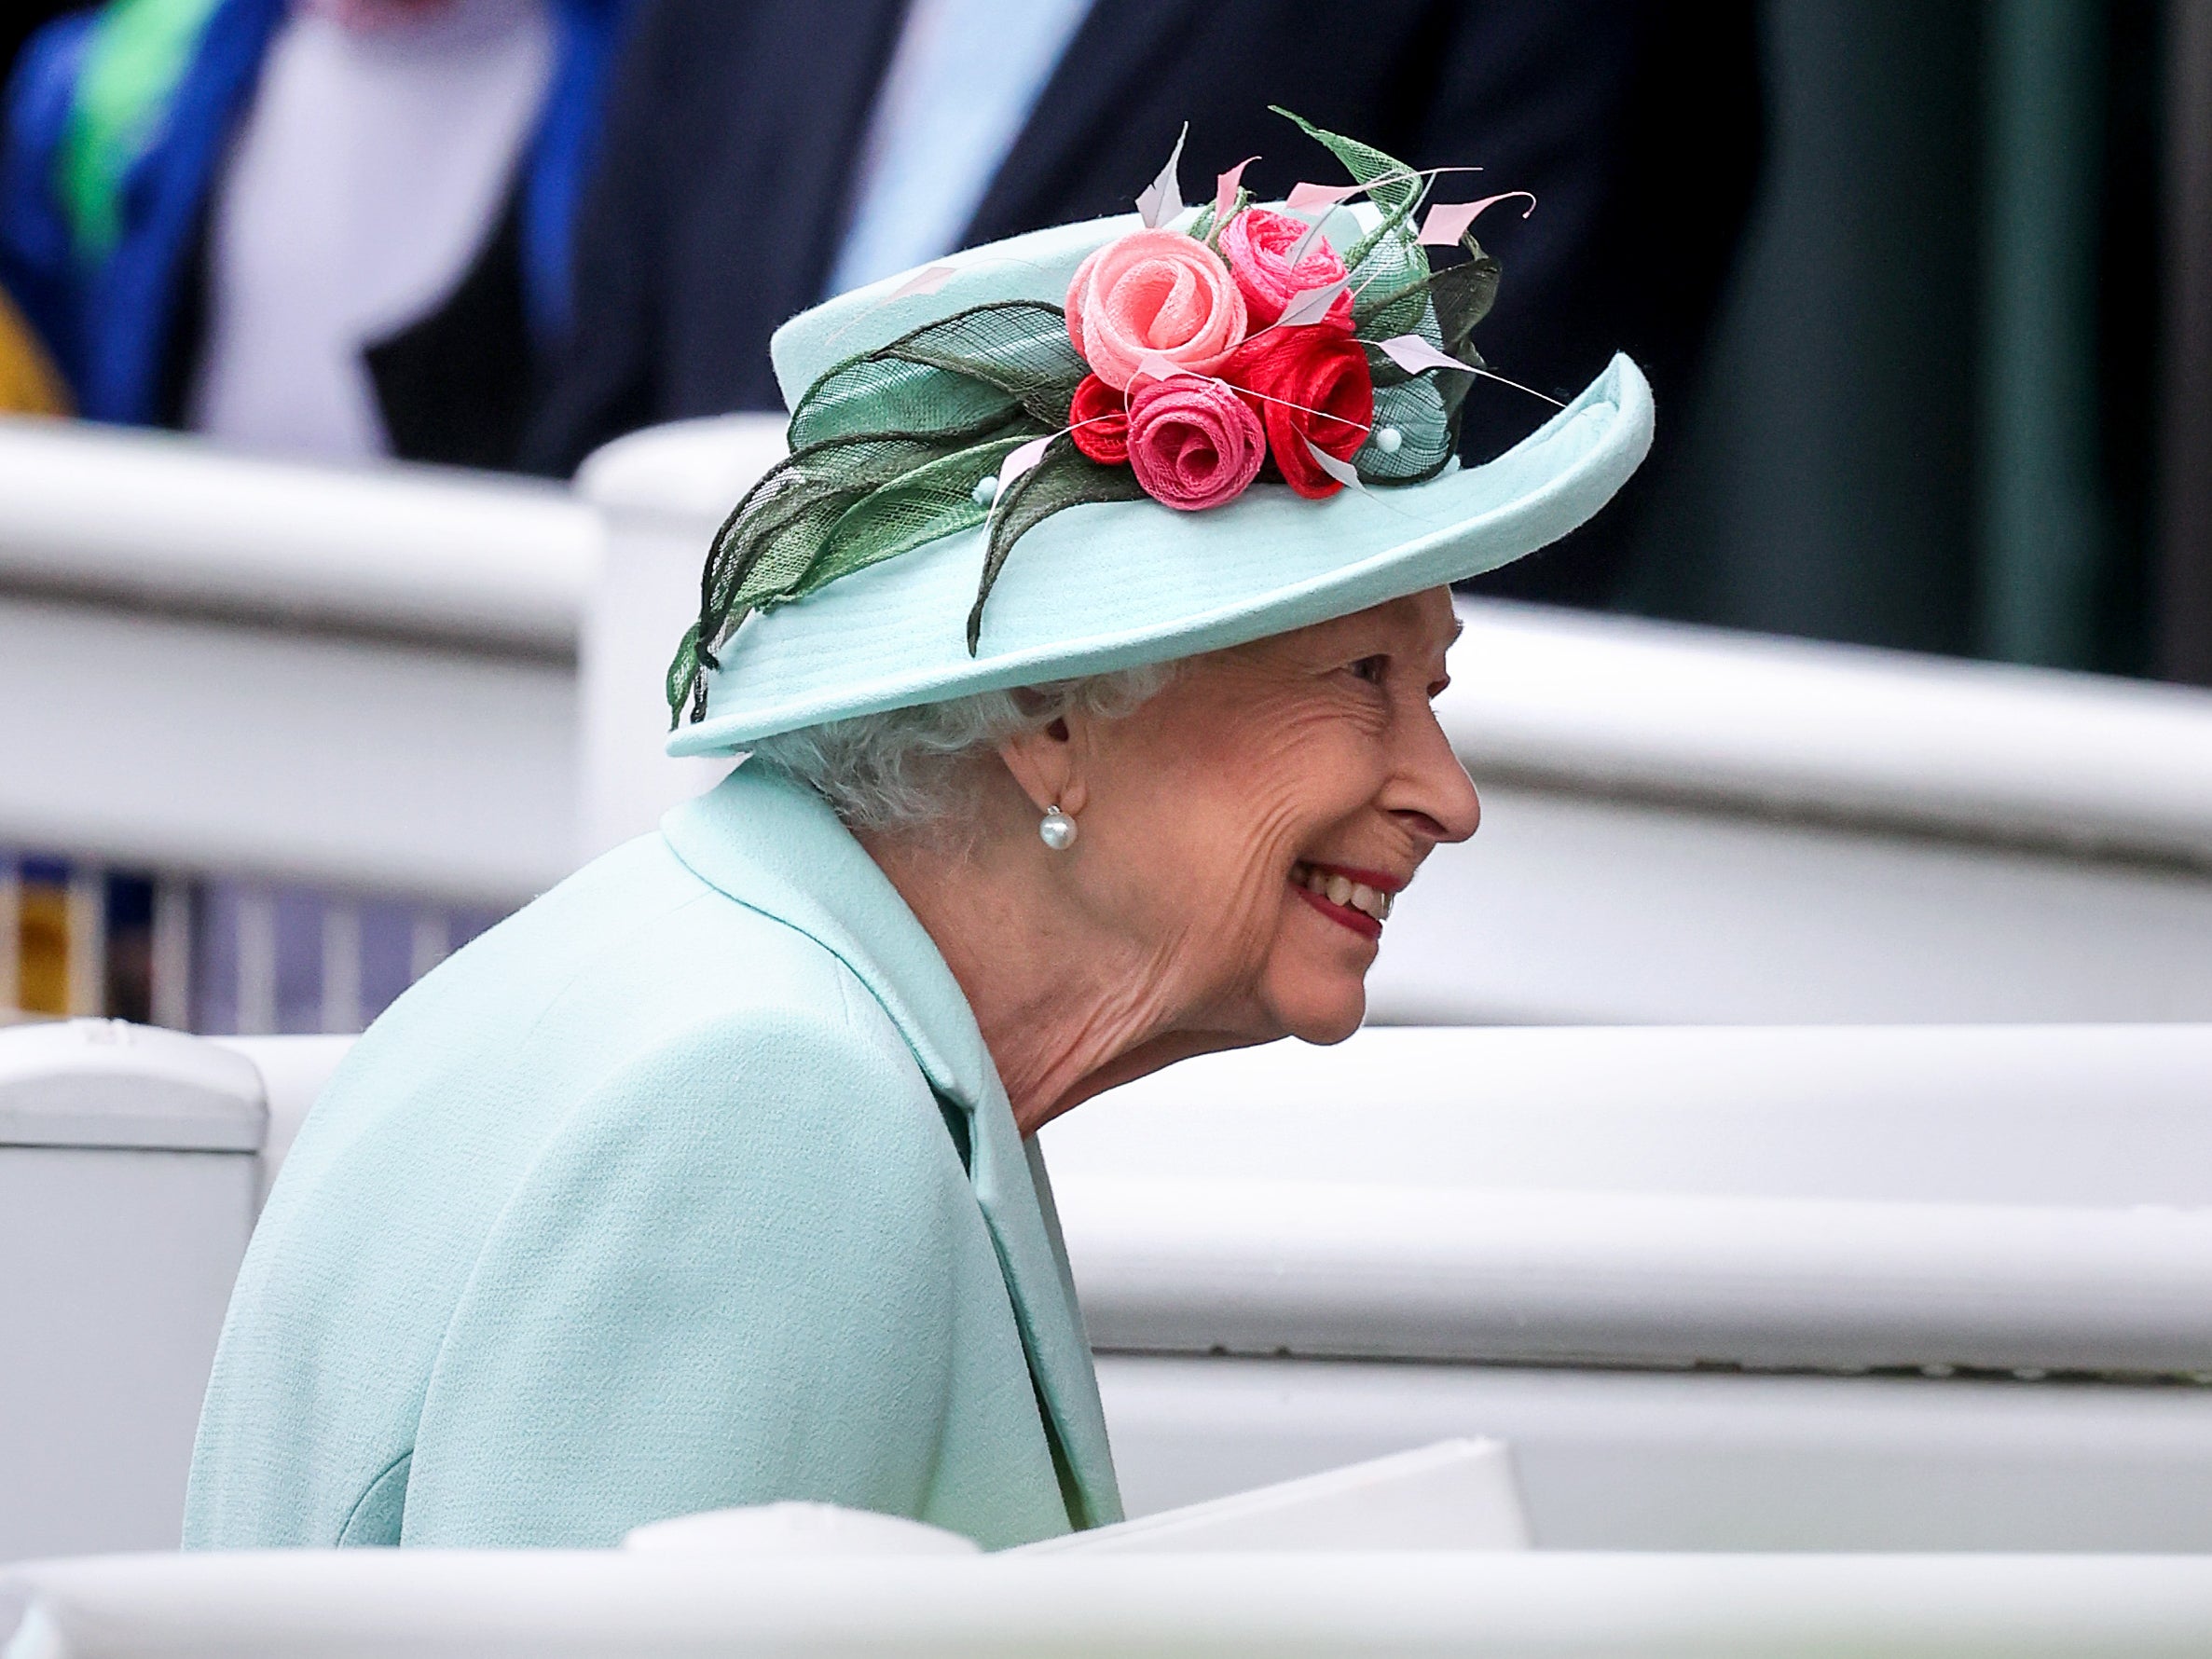 Queen Elizabeth II arrives at Royal Ascot 2021 at Ascot Racecourse